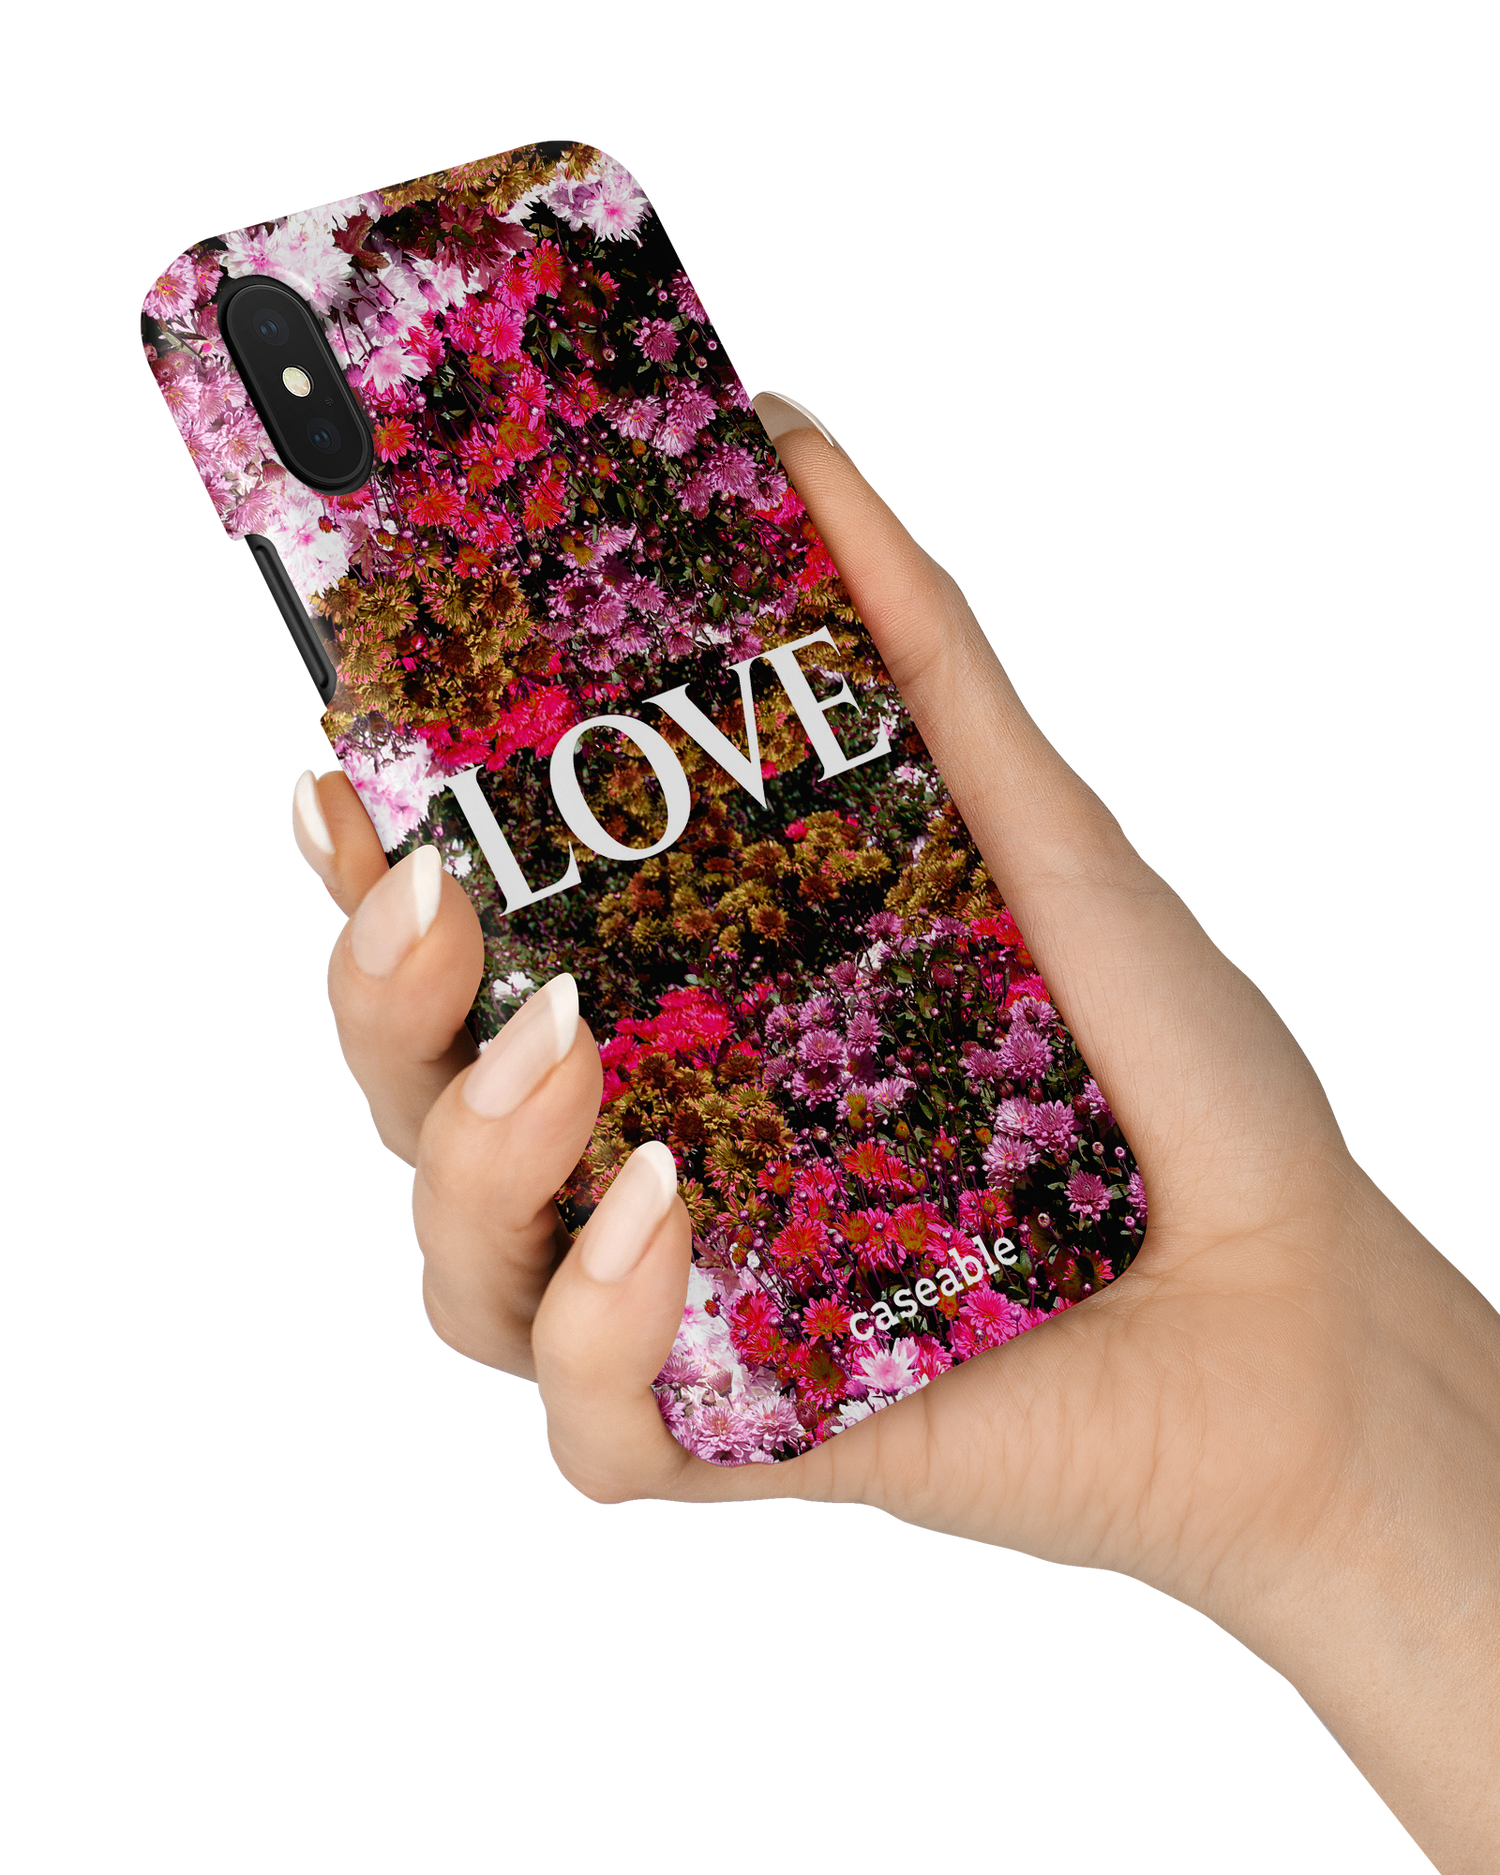 Luxe Love Hardcase Handyhülle Apple iPhone X, Apple iPhone XS in der Hand gehalten